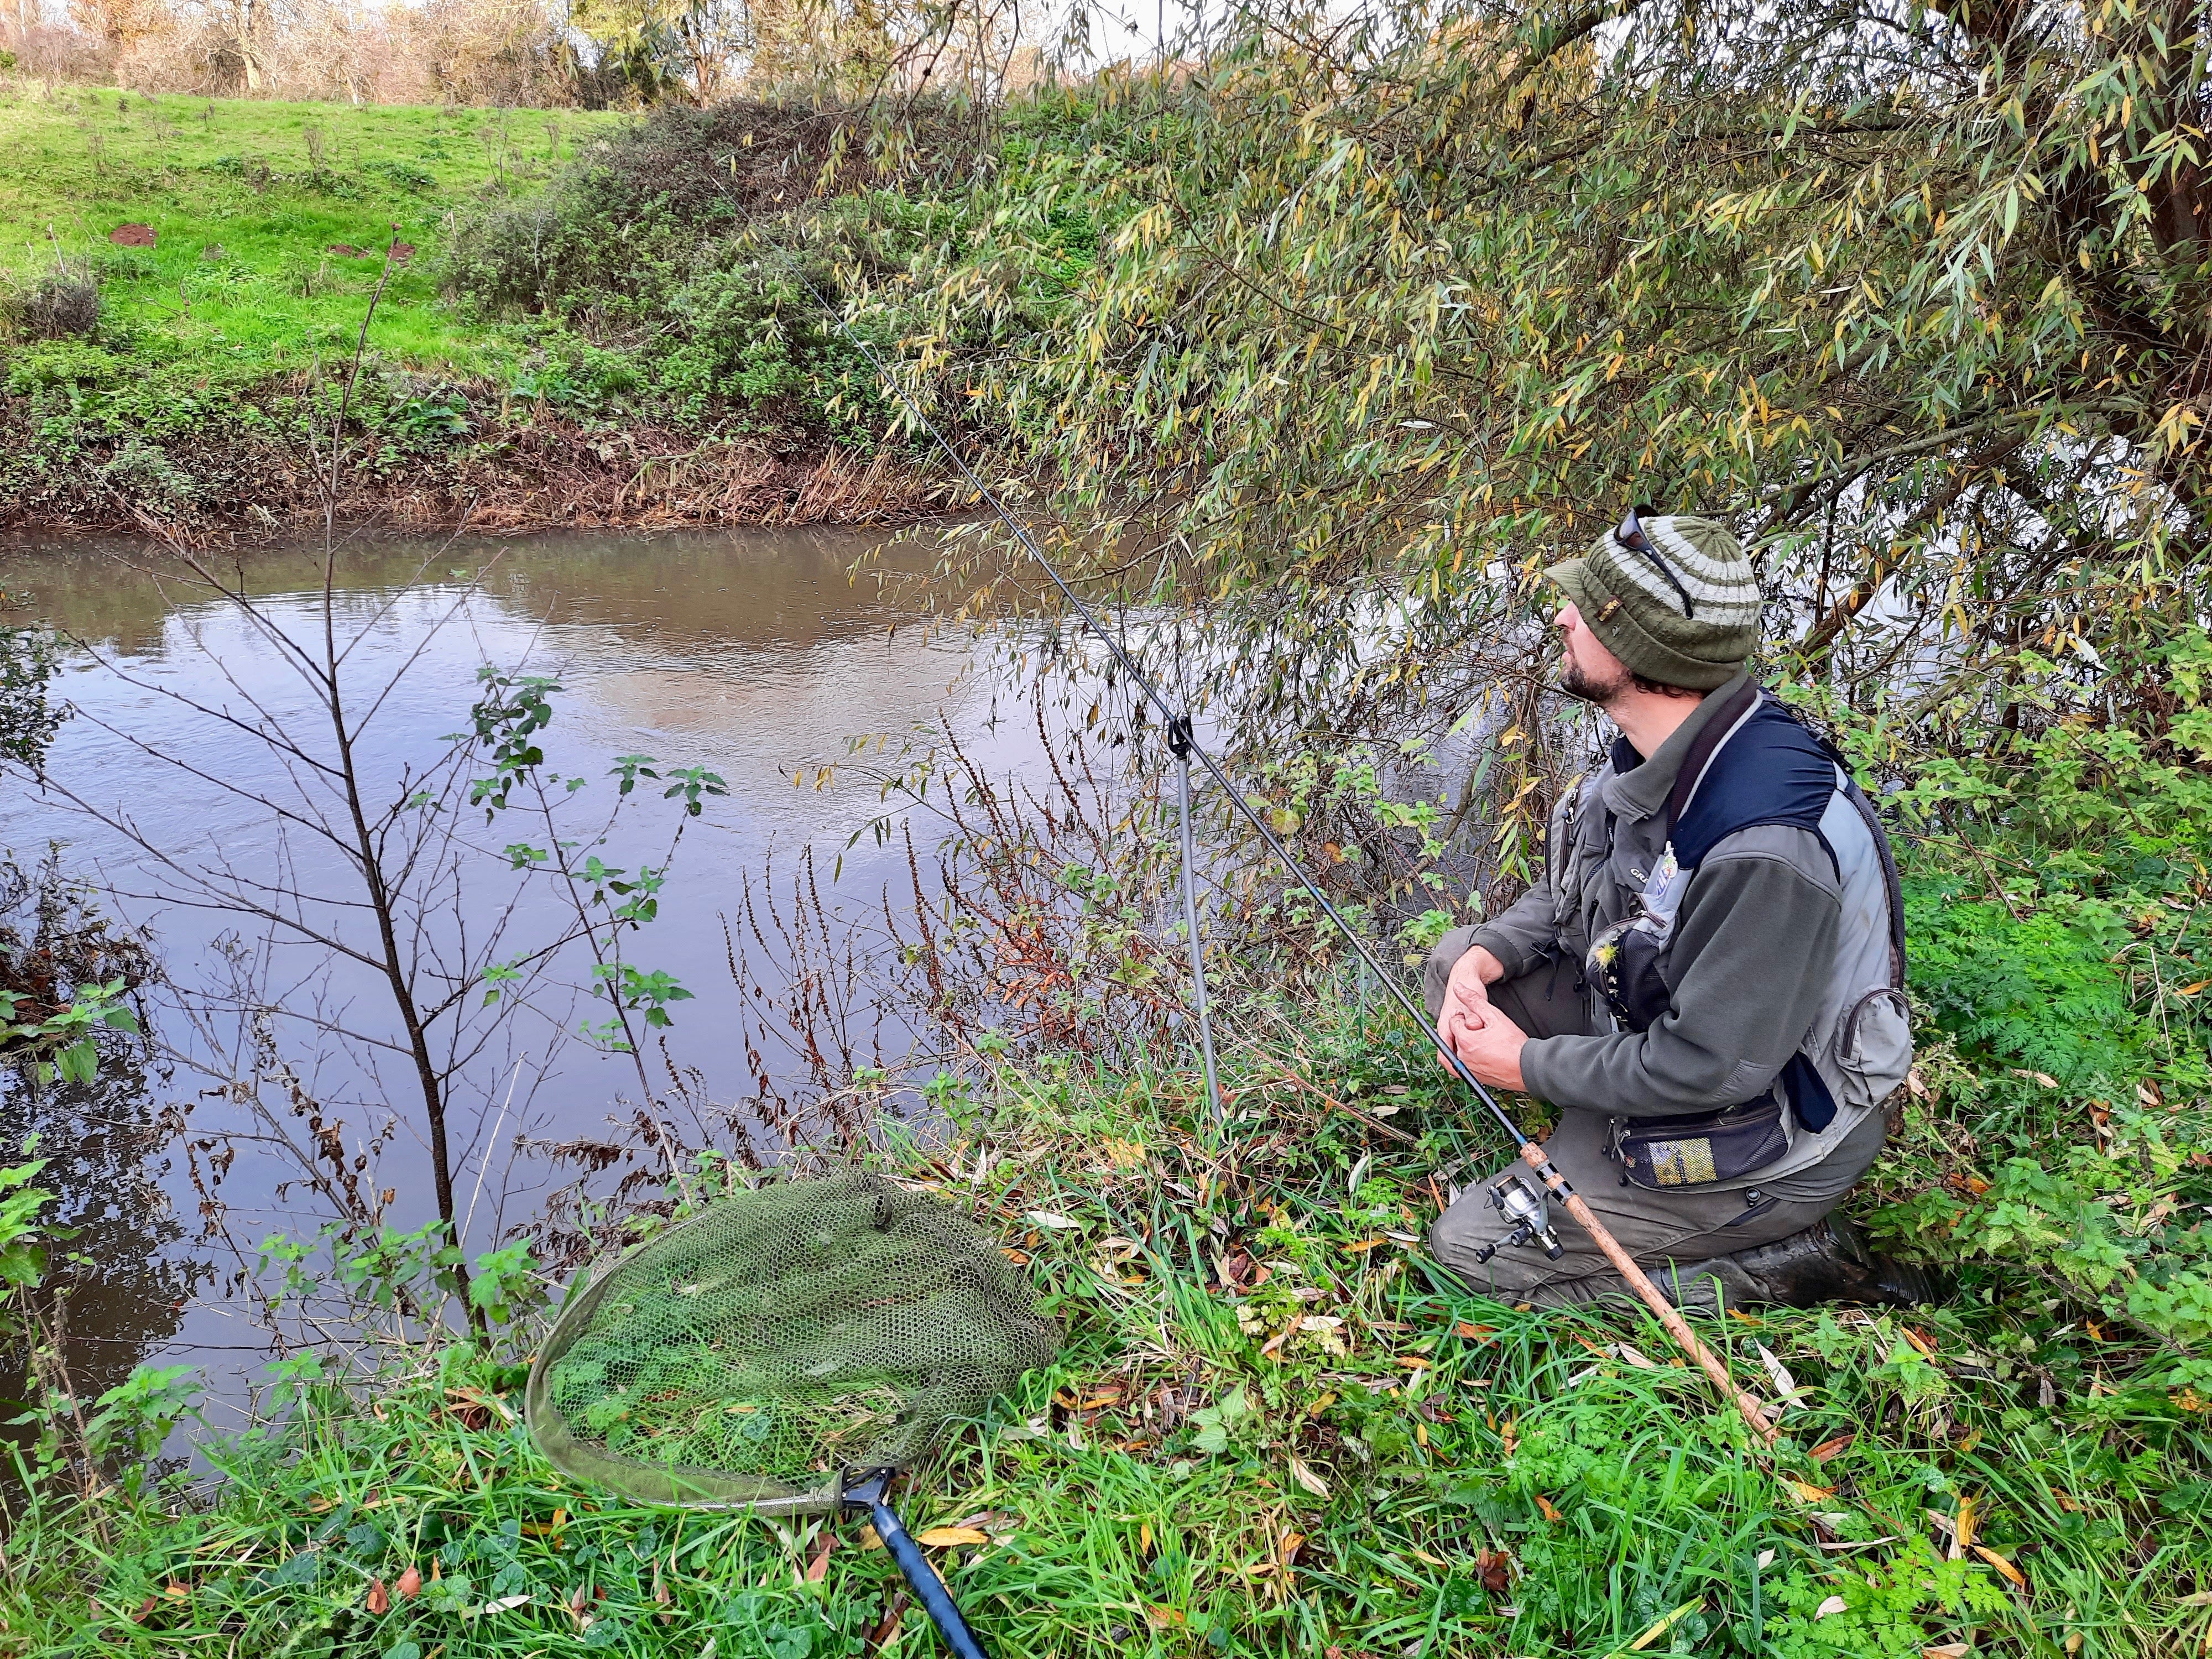 Dominic Garnett fishing on the River Tone before the trees were felled (Dominic Garnett/PA)